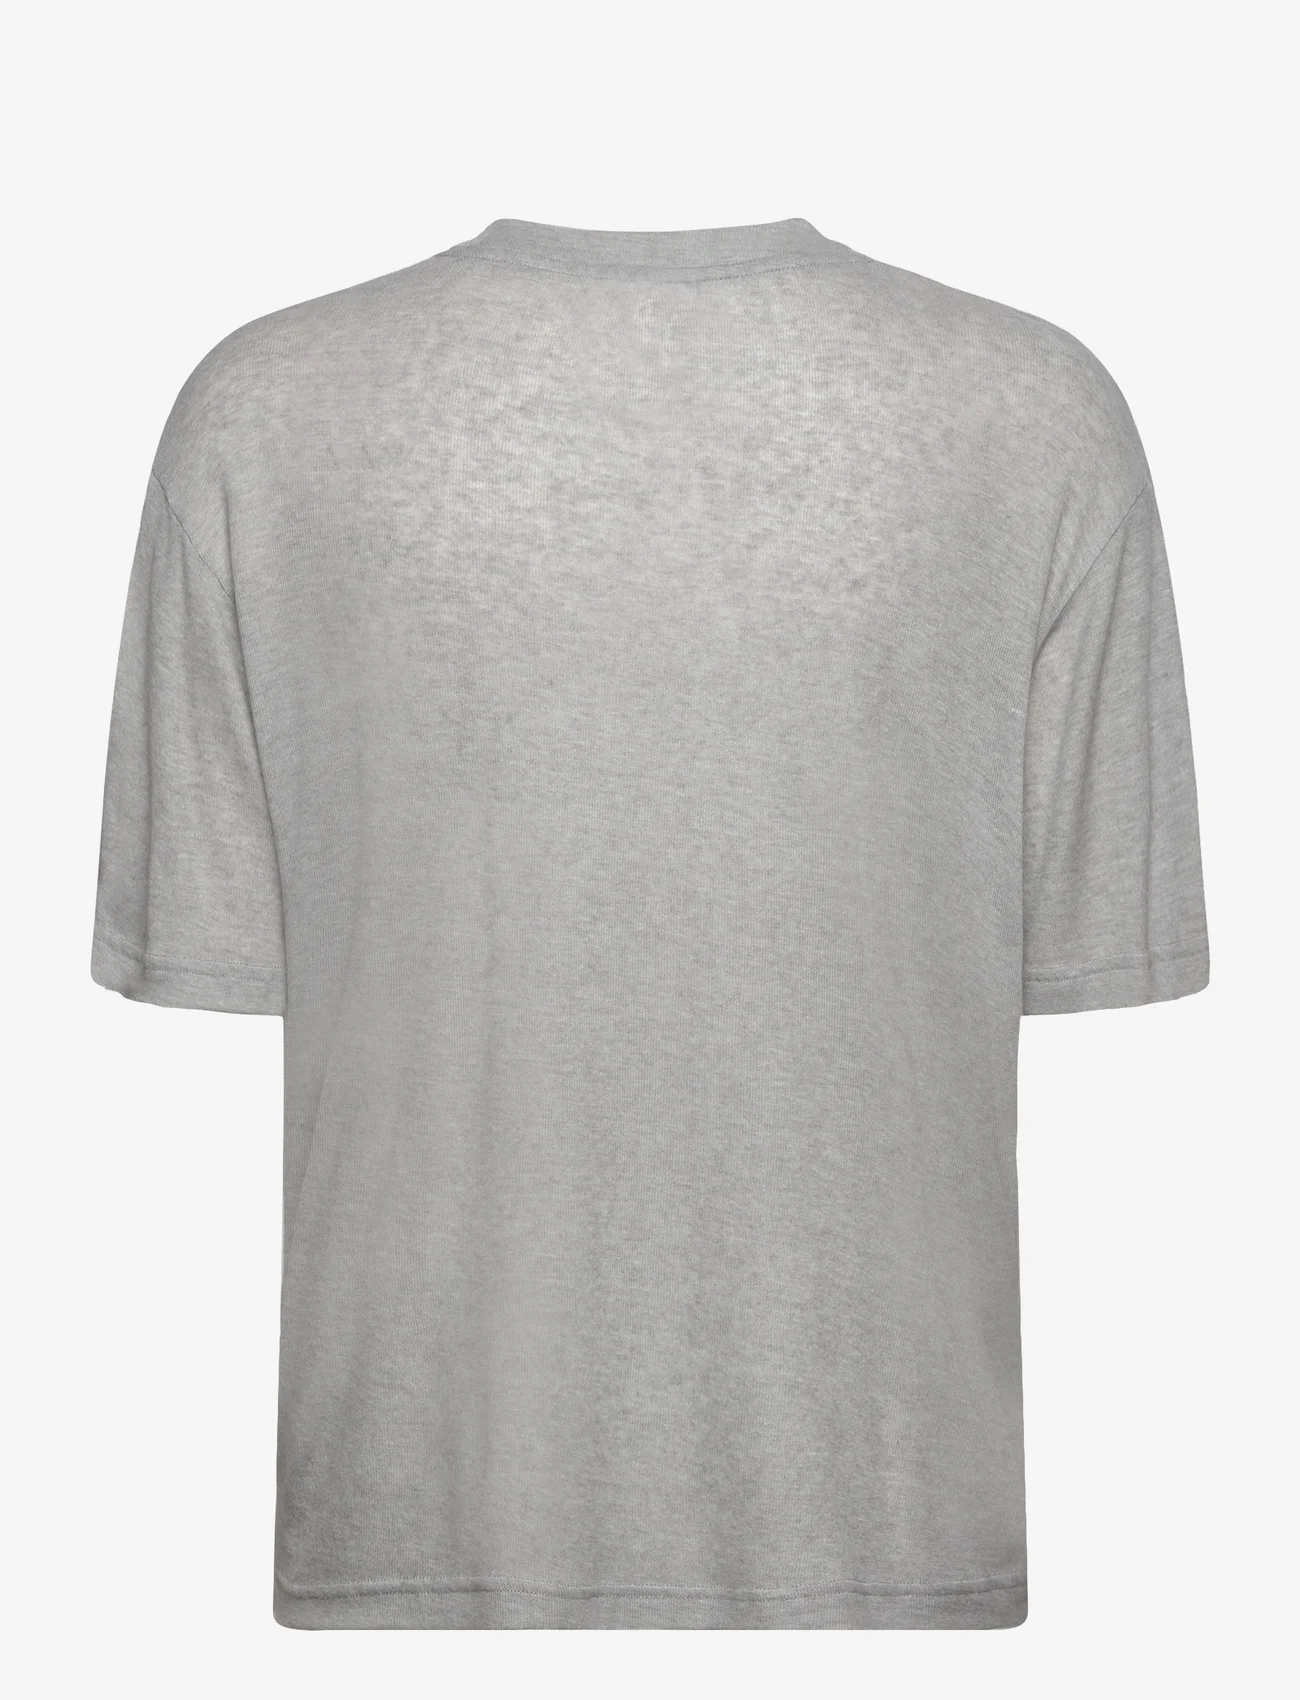 Day Birger et Mikkelsen - Parry - Soft Wool - marškinėliai - medium grey melange - 1